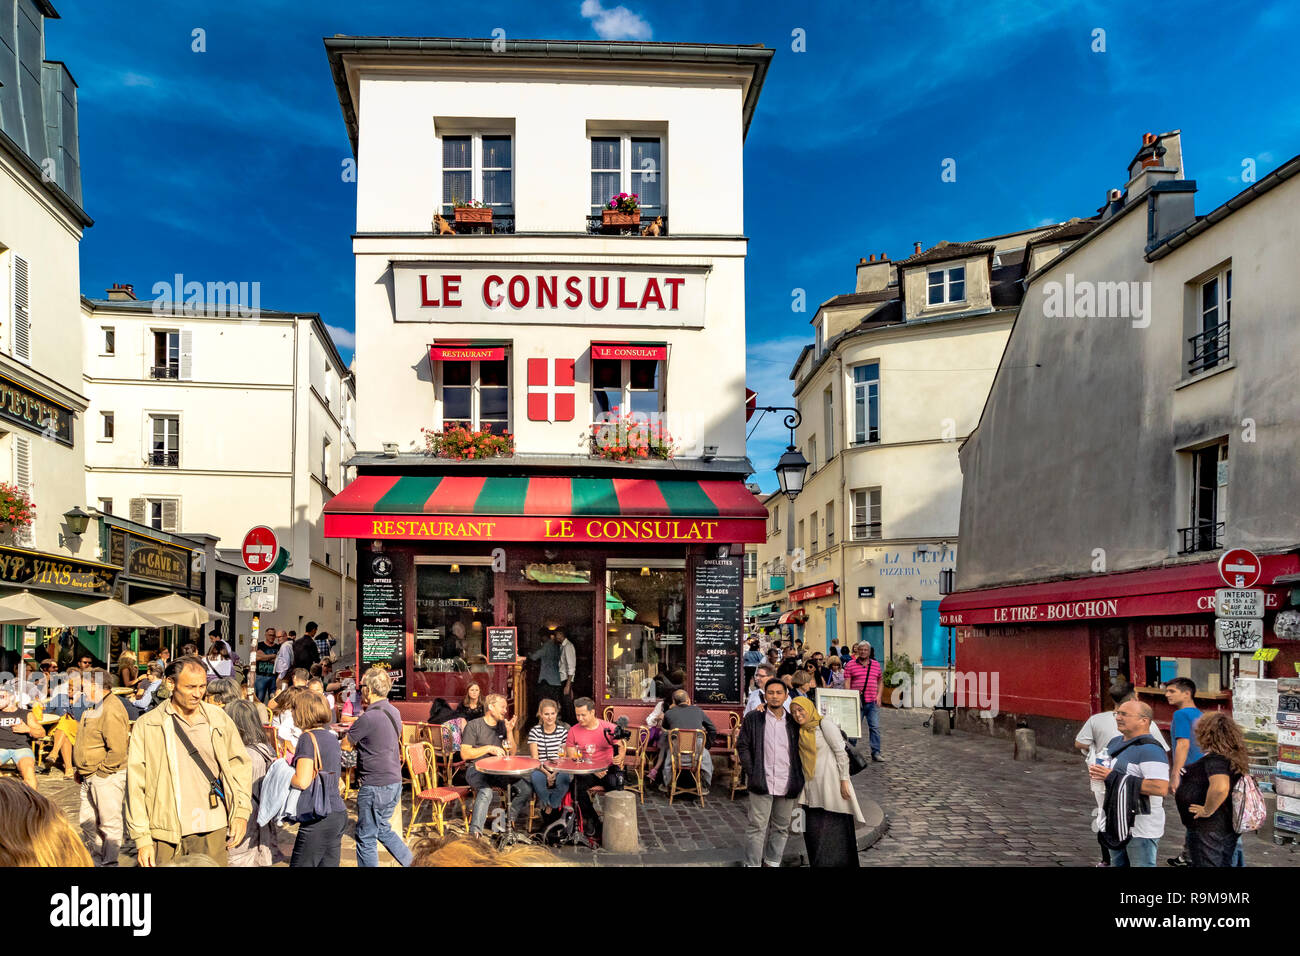 Les visiteurs apprécient le déjeuner assis devant le restaurant le Consulat un restaurant et un bistro sur la rue Norvins au coeur de Montmartre, Paris, France Banque D'Images